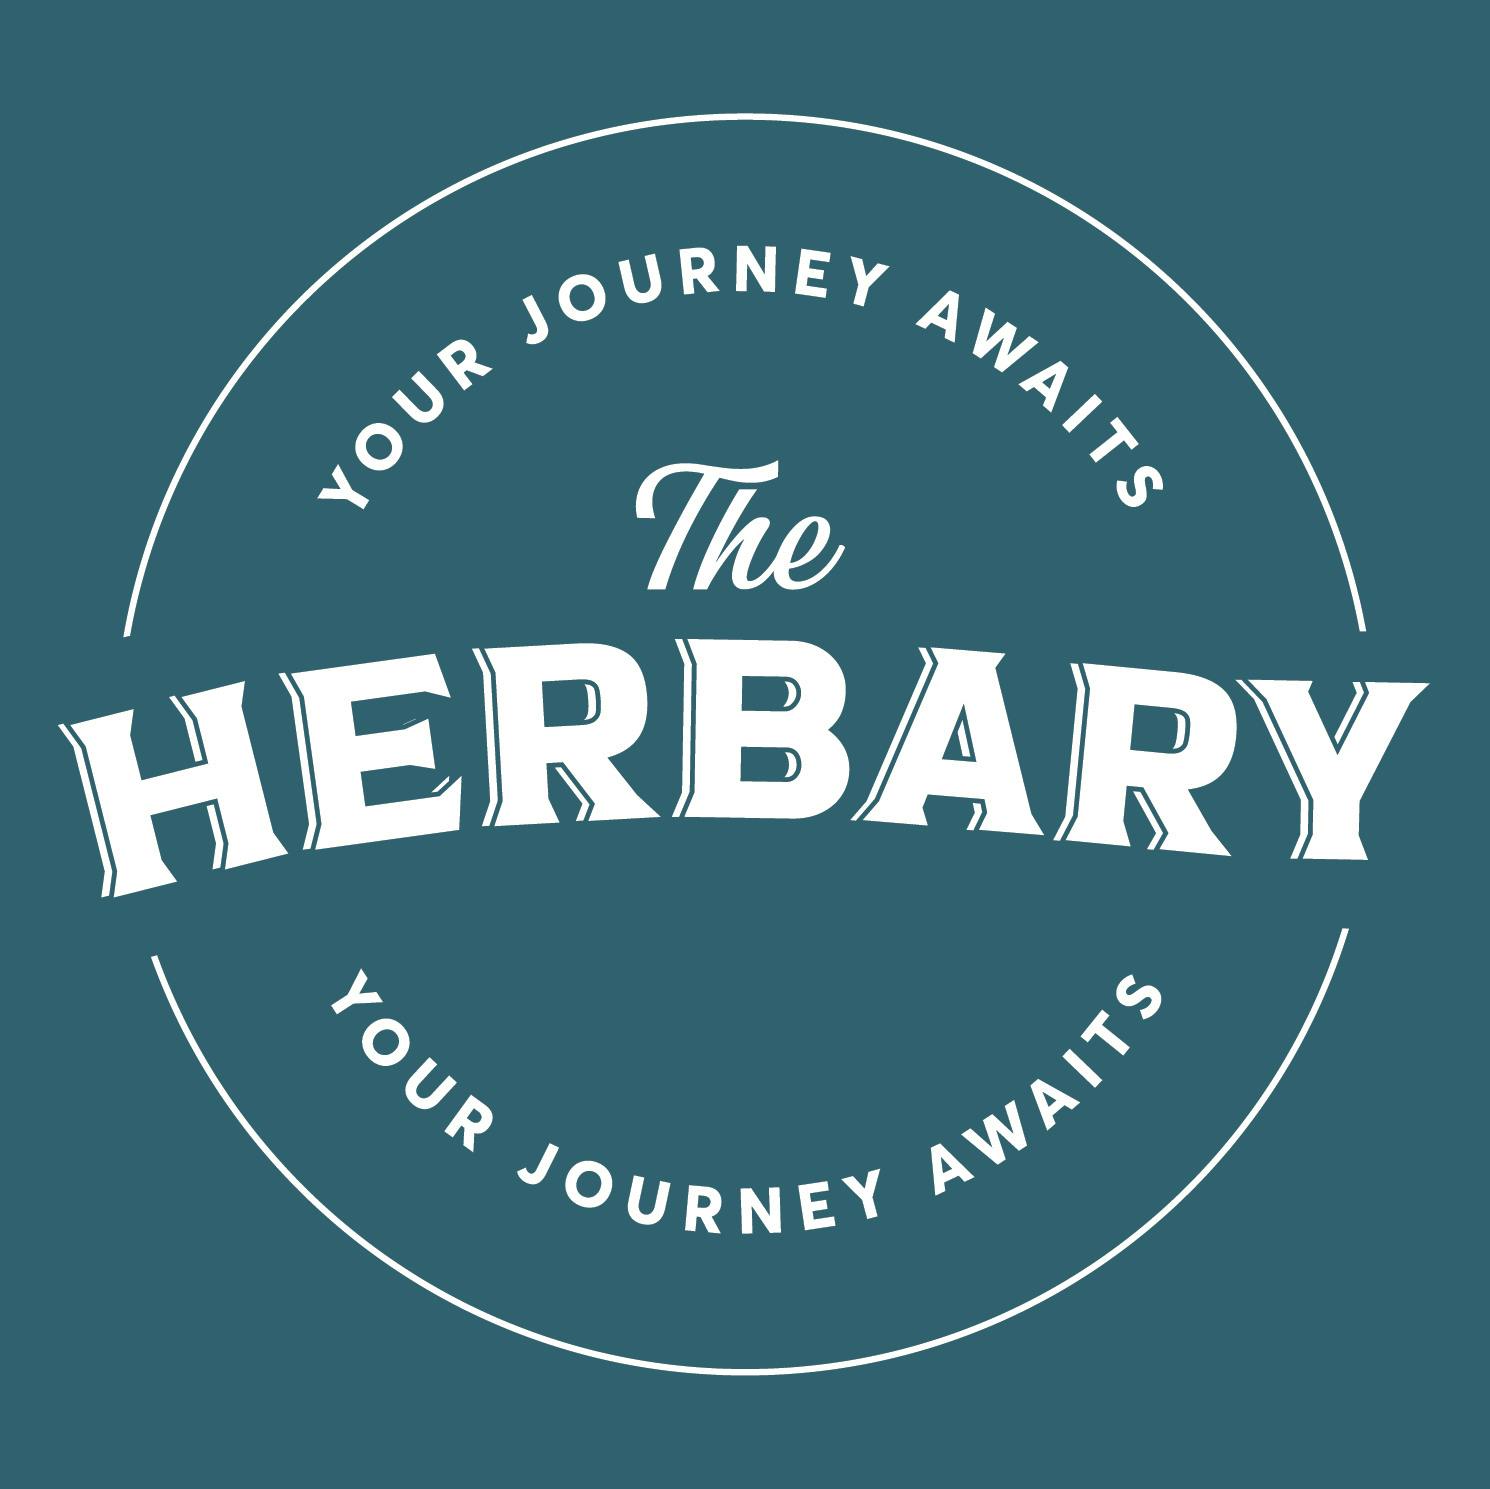 The Herbary-logo